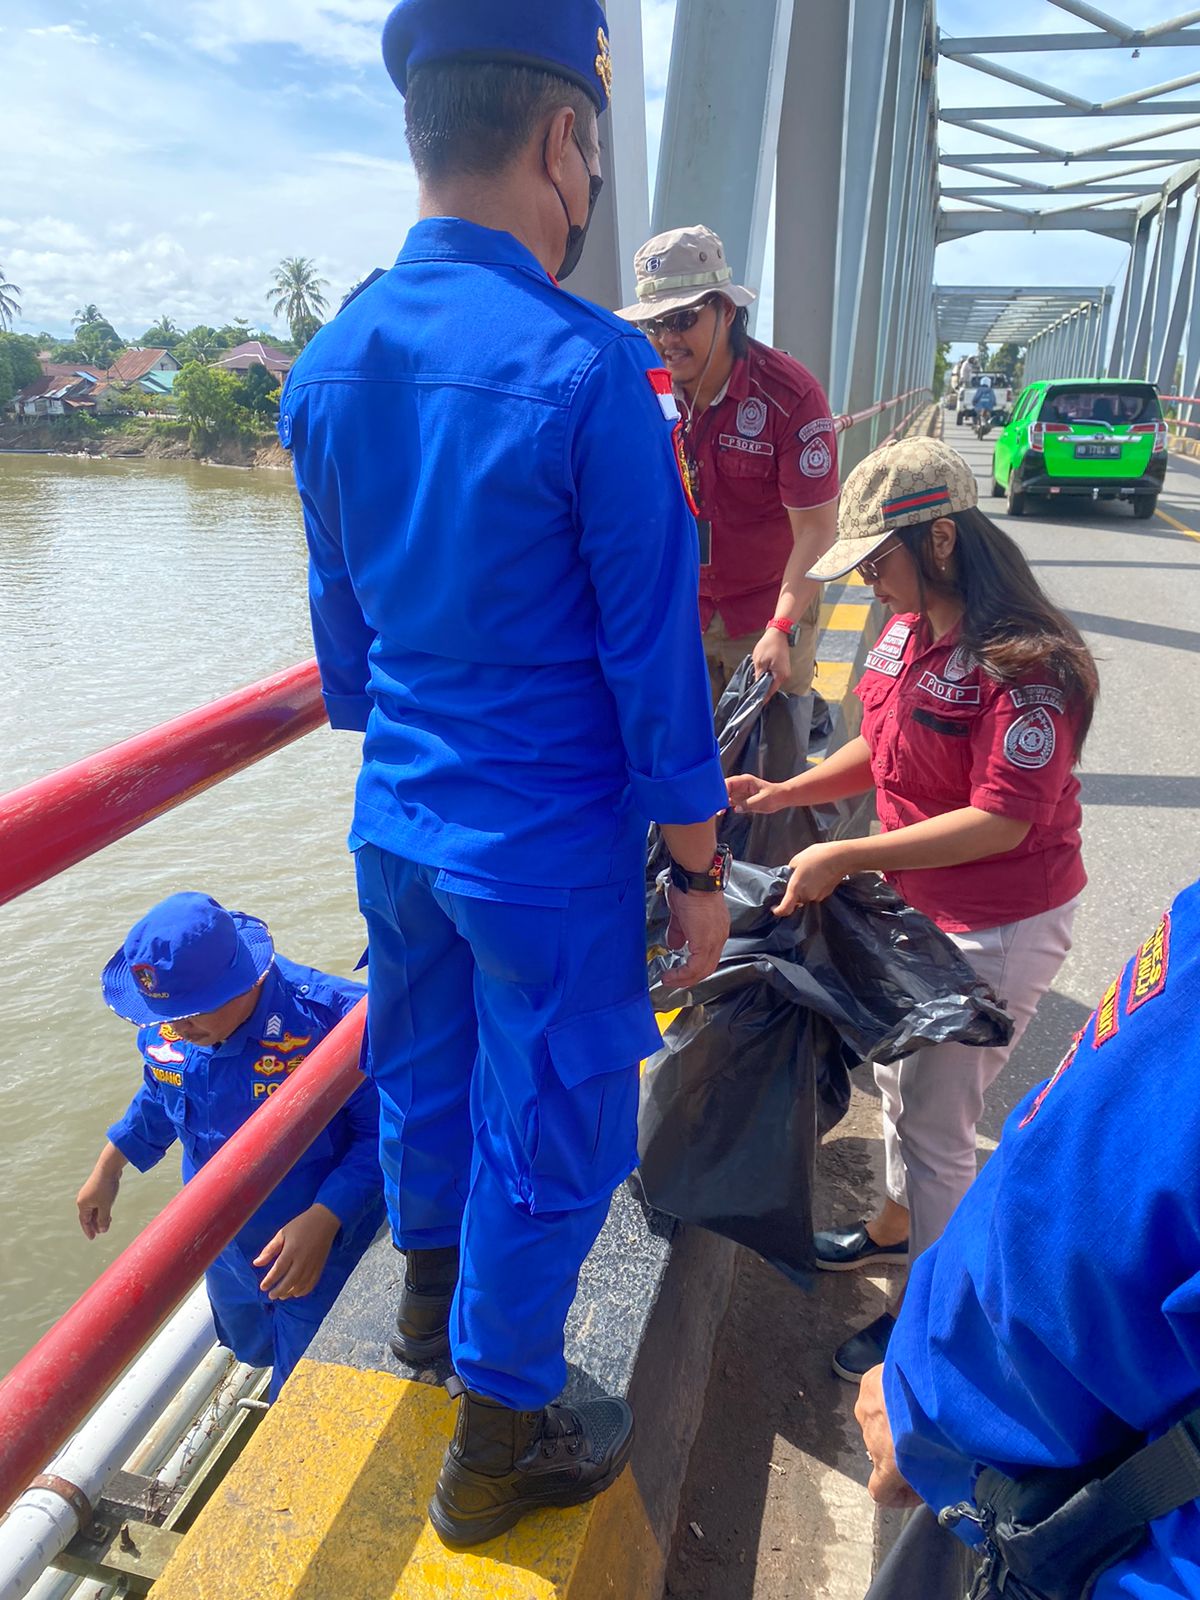 Satpol Airud Polres Kapuas Hulu jajaran Polda Kalbar menggelar aksi sosial berupa membersihkan sampah di jembatan Sungai Kapuas, Selasa (29/11/2022). (Foto: Ishaq)